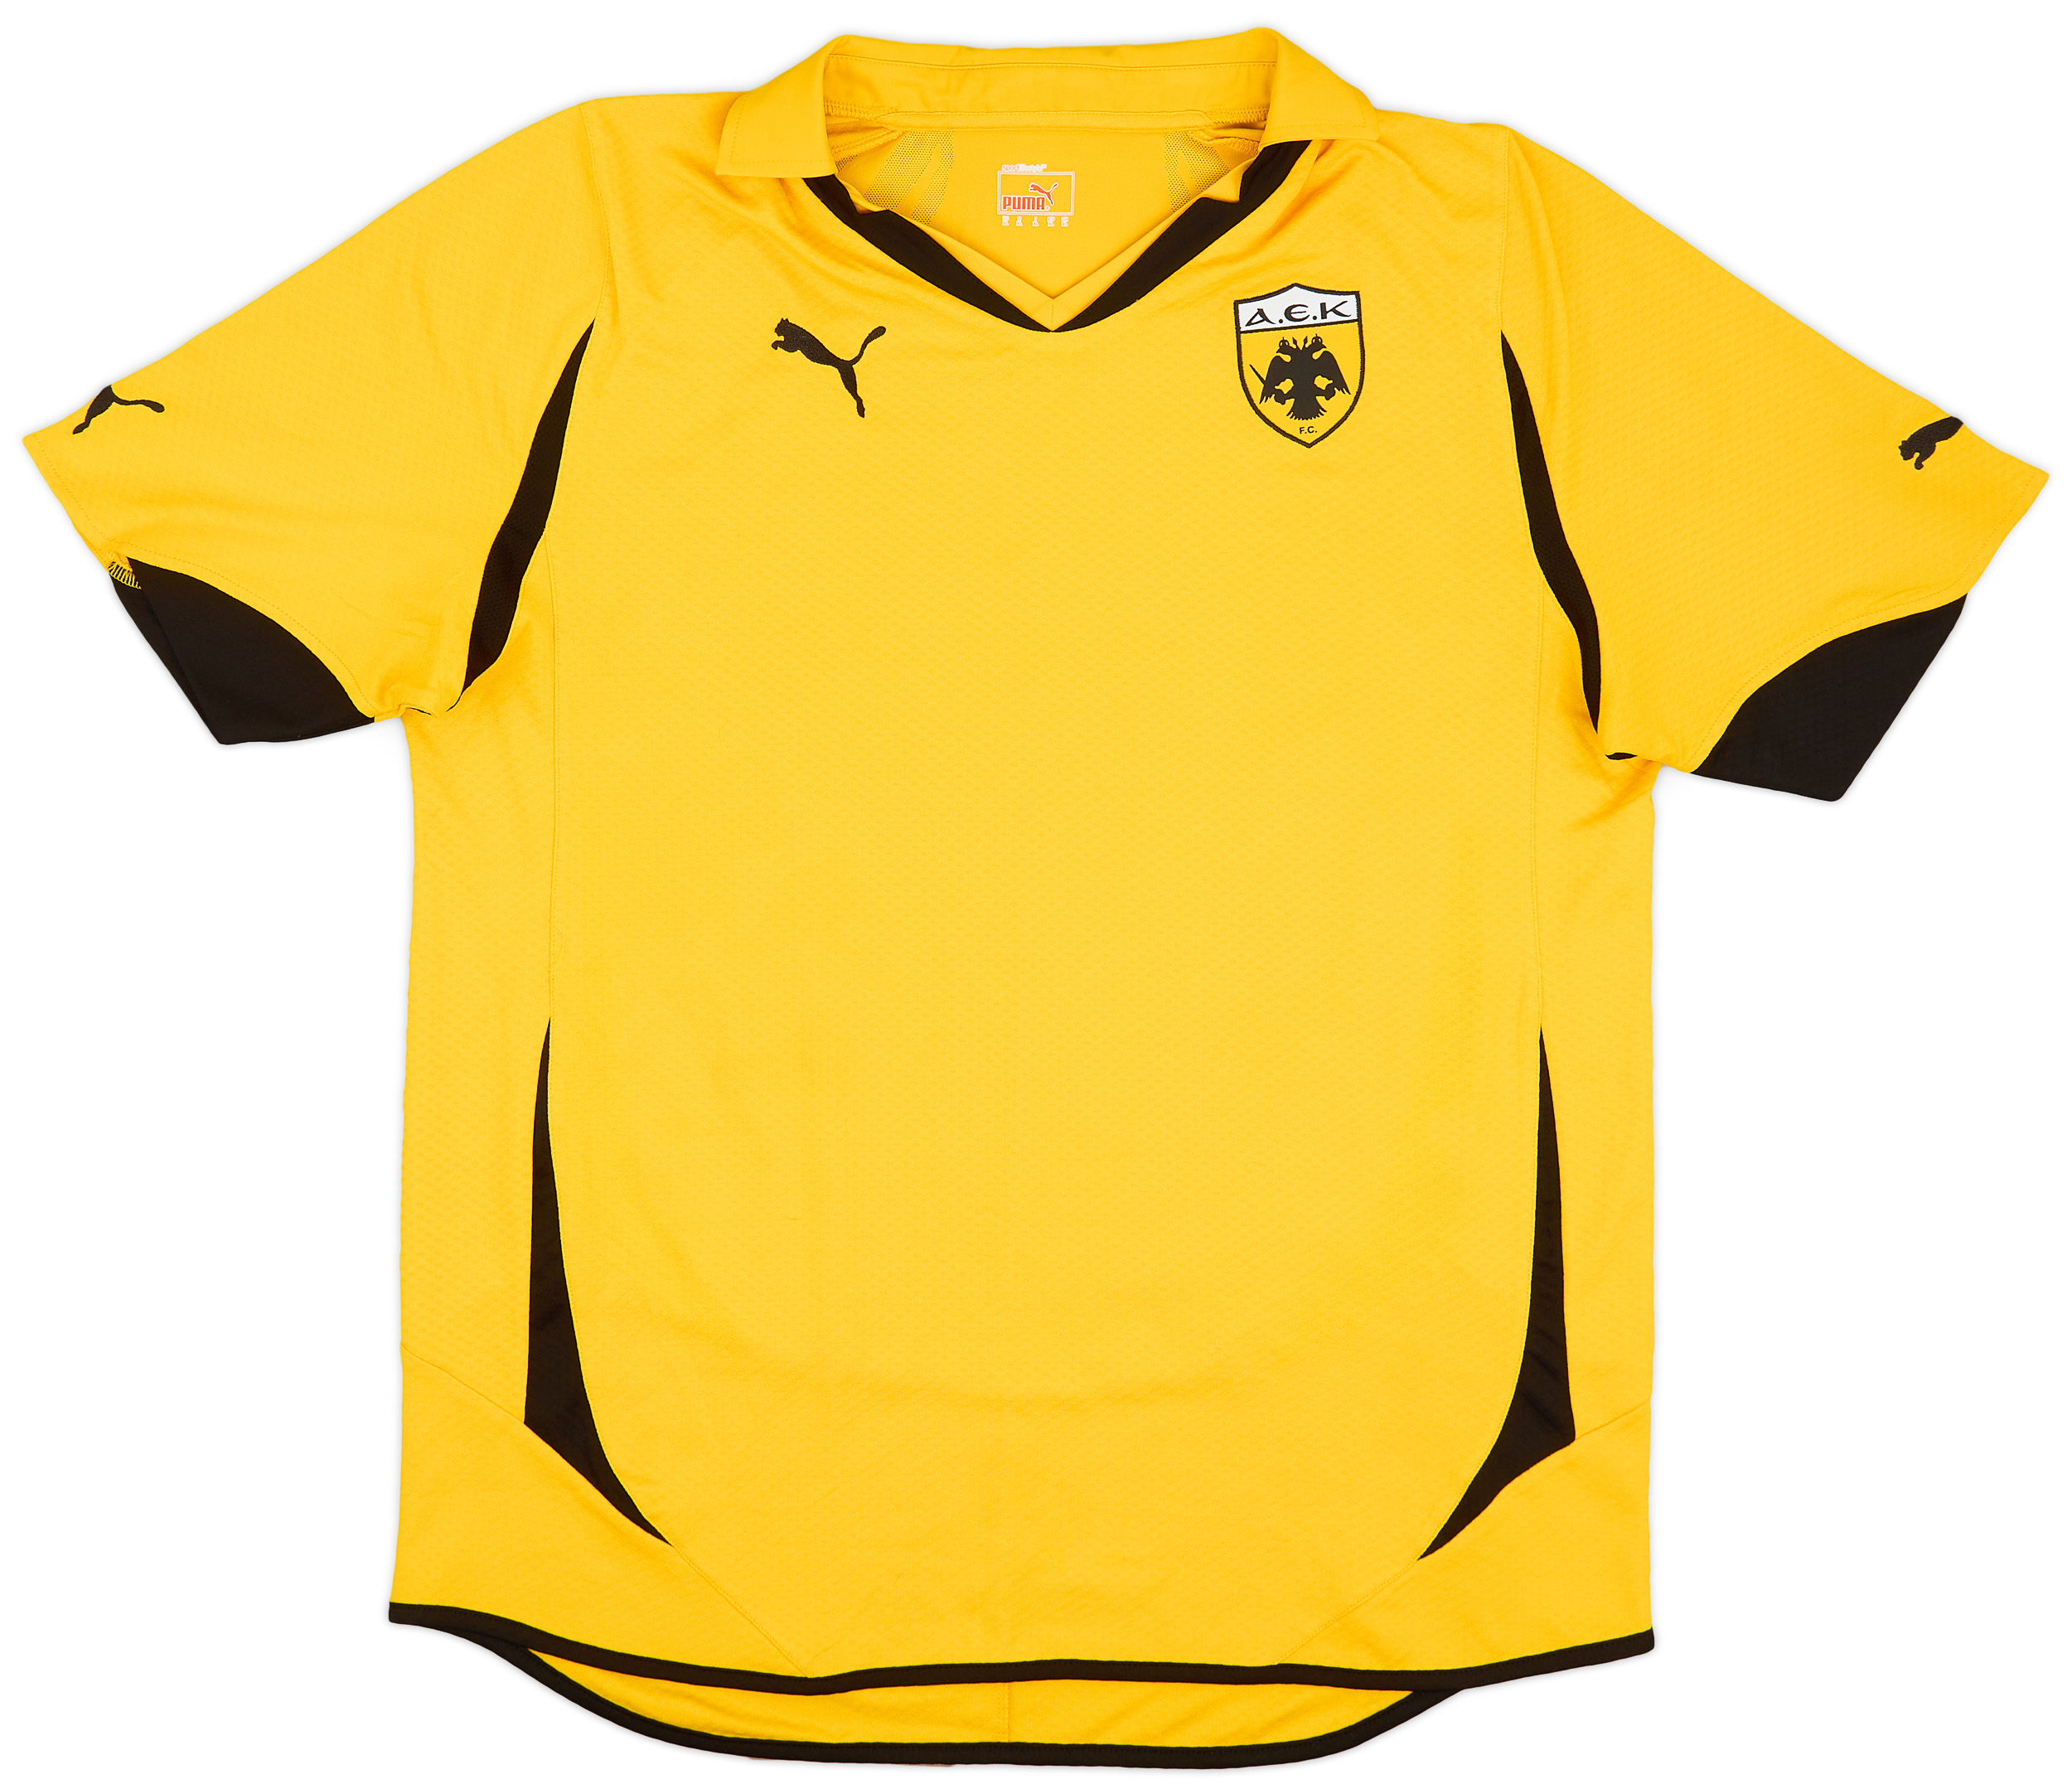 AEK Athens  home shirt  (Original)